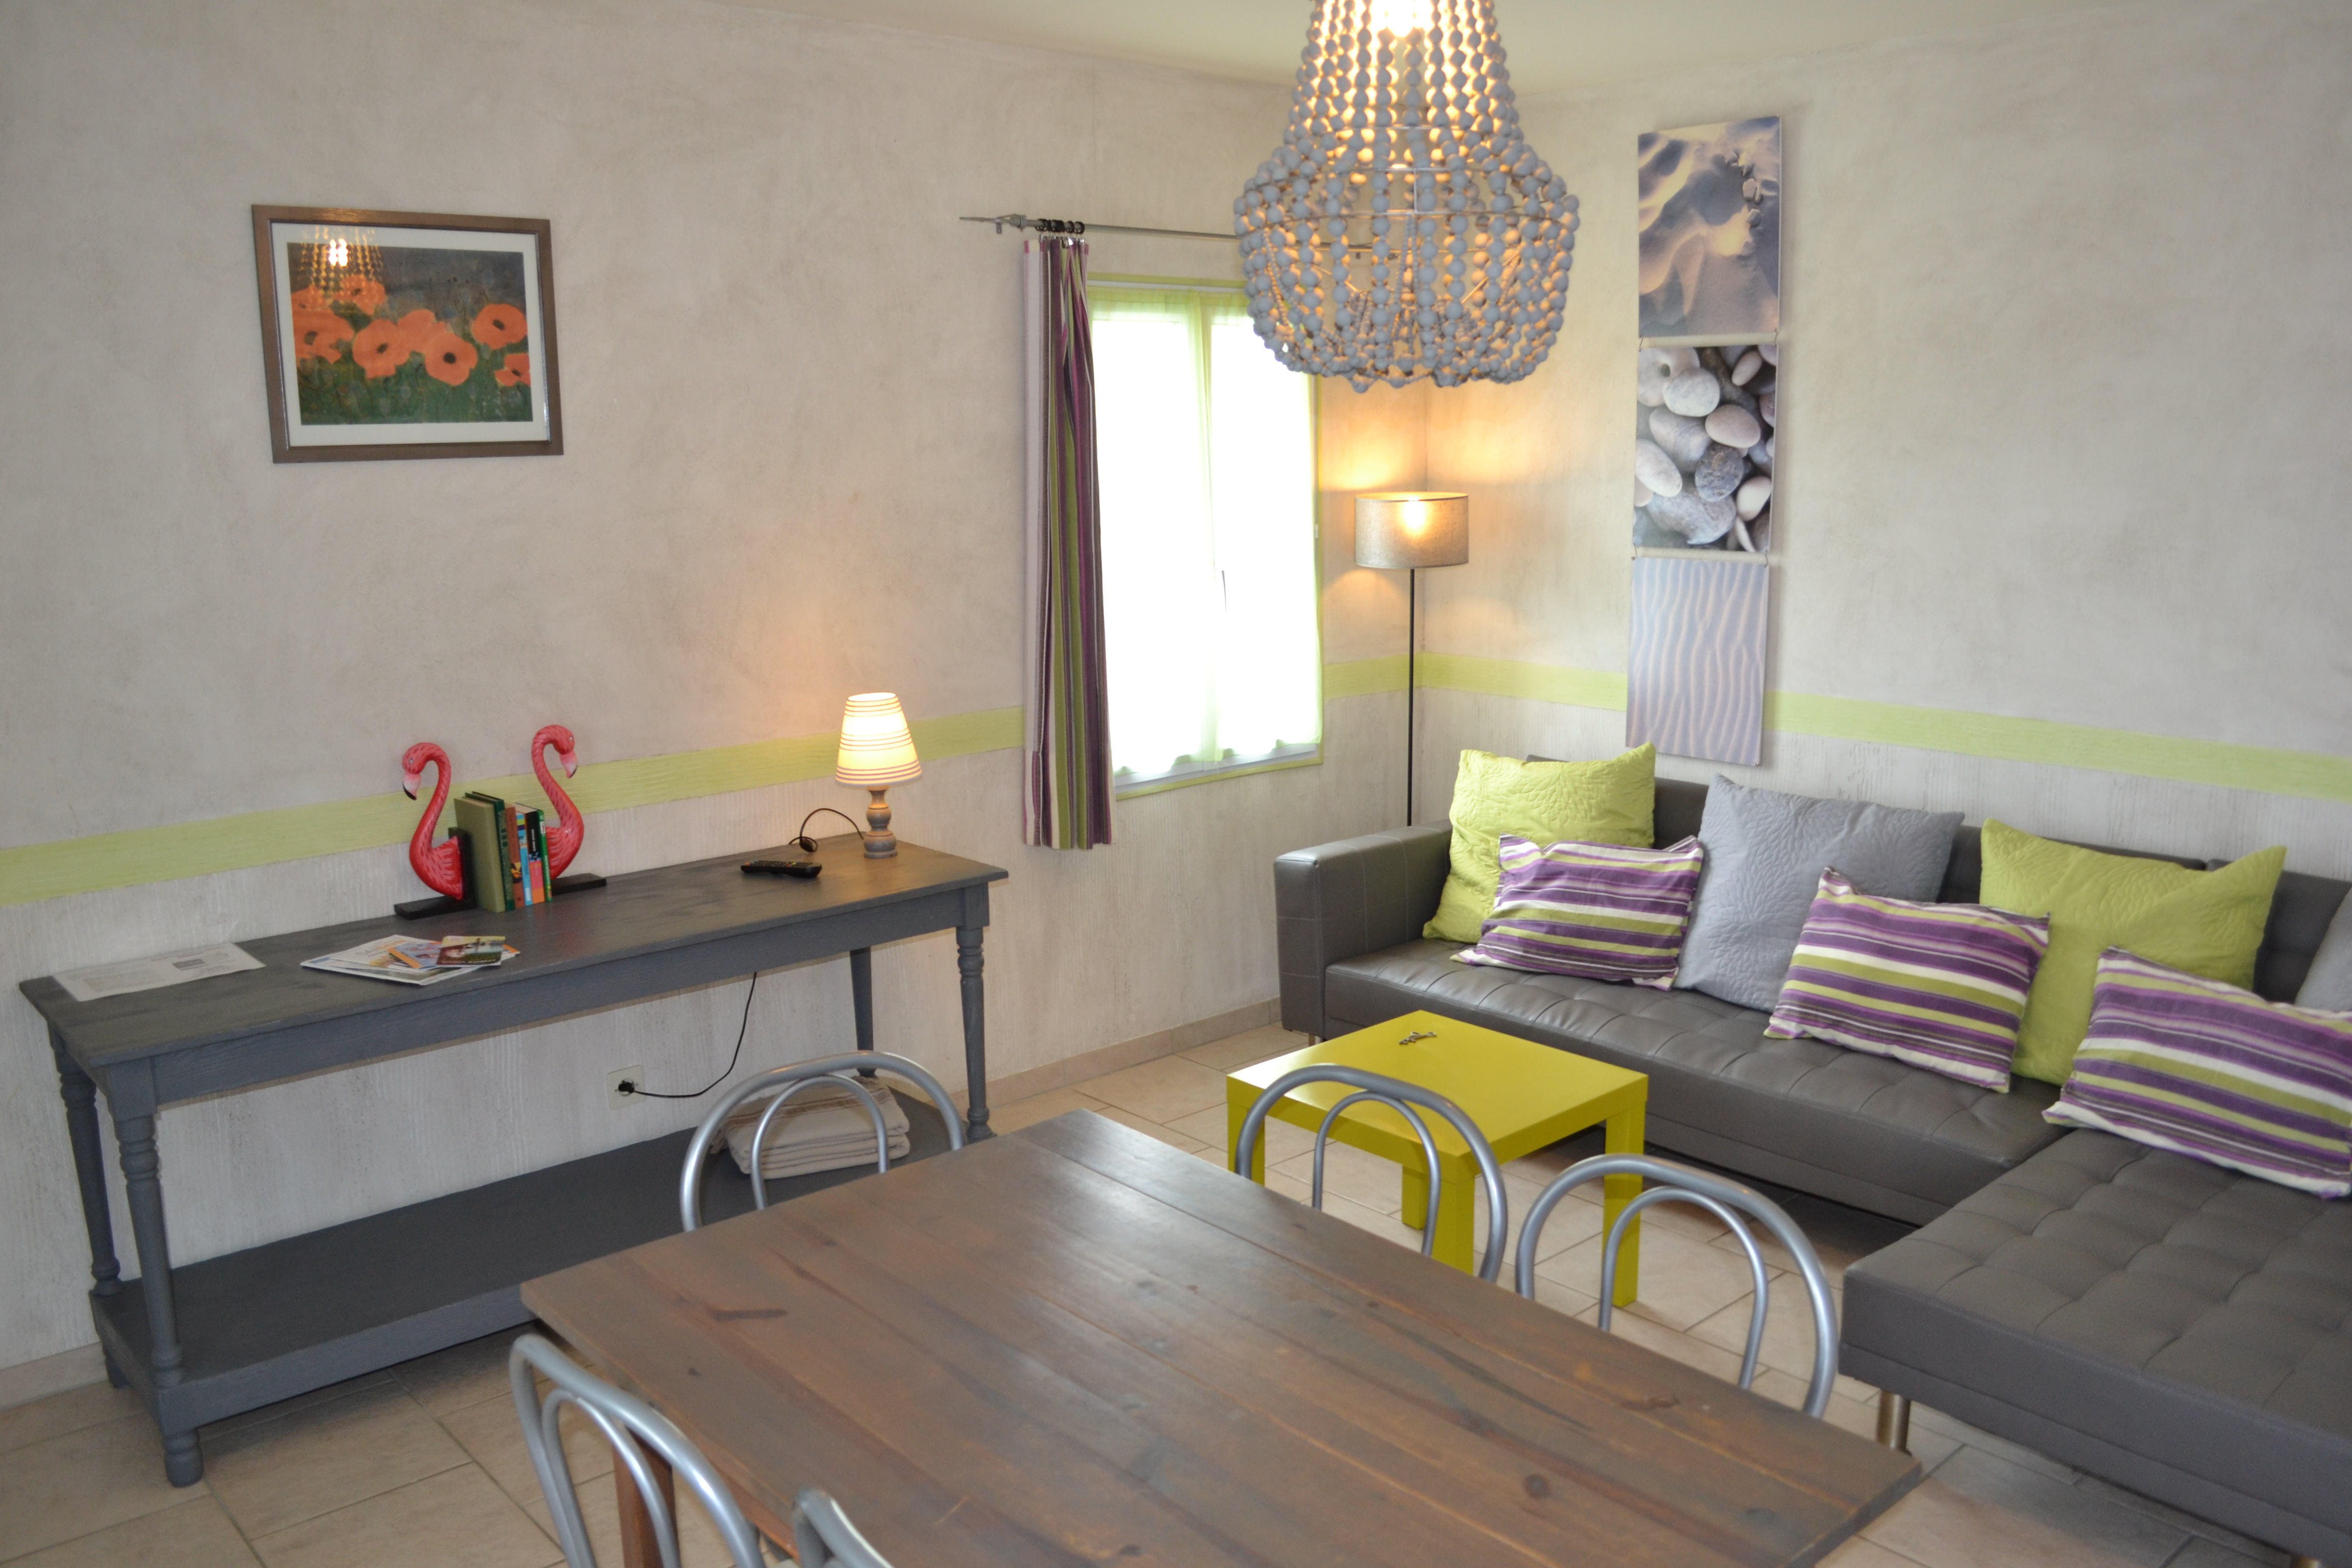 Suite-appartement Doridelle 4 personnes - A 150 mètres de la plage de la Menounière - proche de la Cotinière - Charente Maritime - île d'Oléron